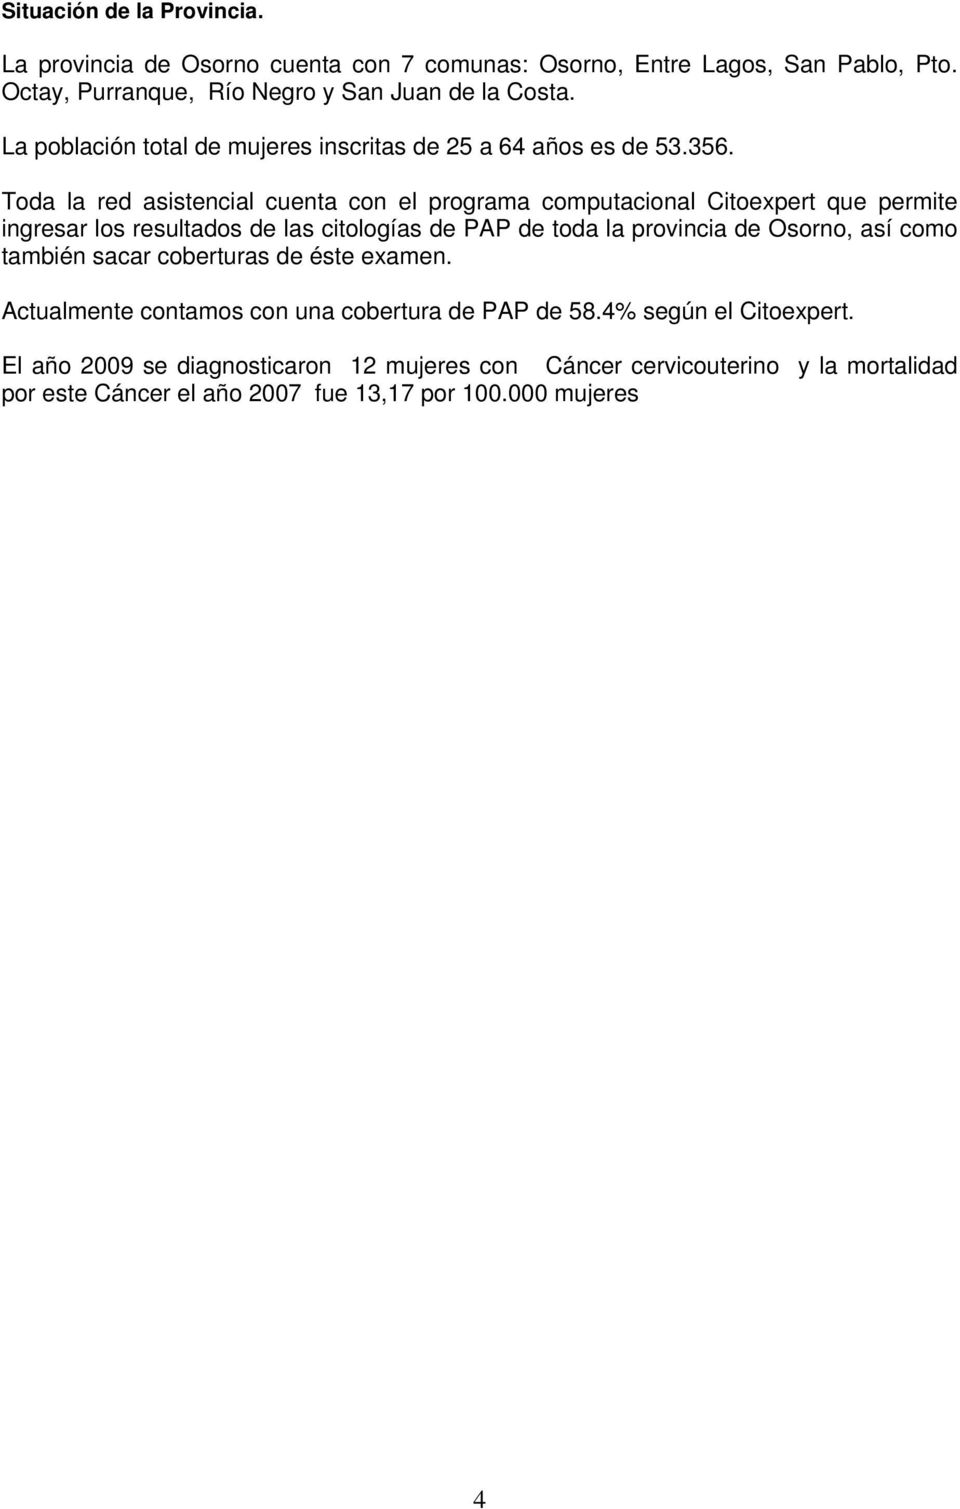 Toda la red asistencial cuenta con el programa computacional Citoexpert que permite ingresar los resultados de las citologías de PAP de toda la provincia de Osorno,